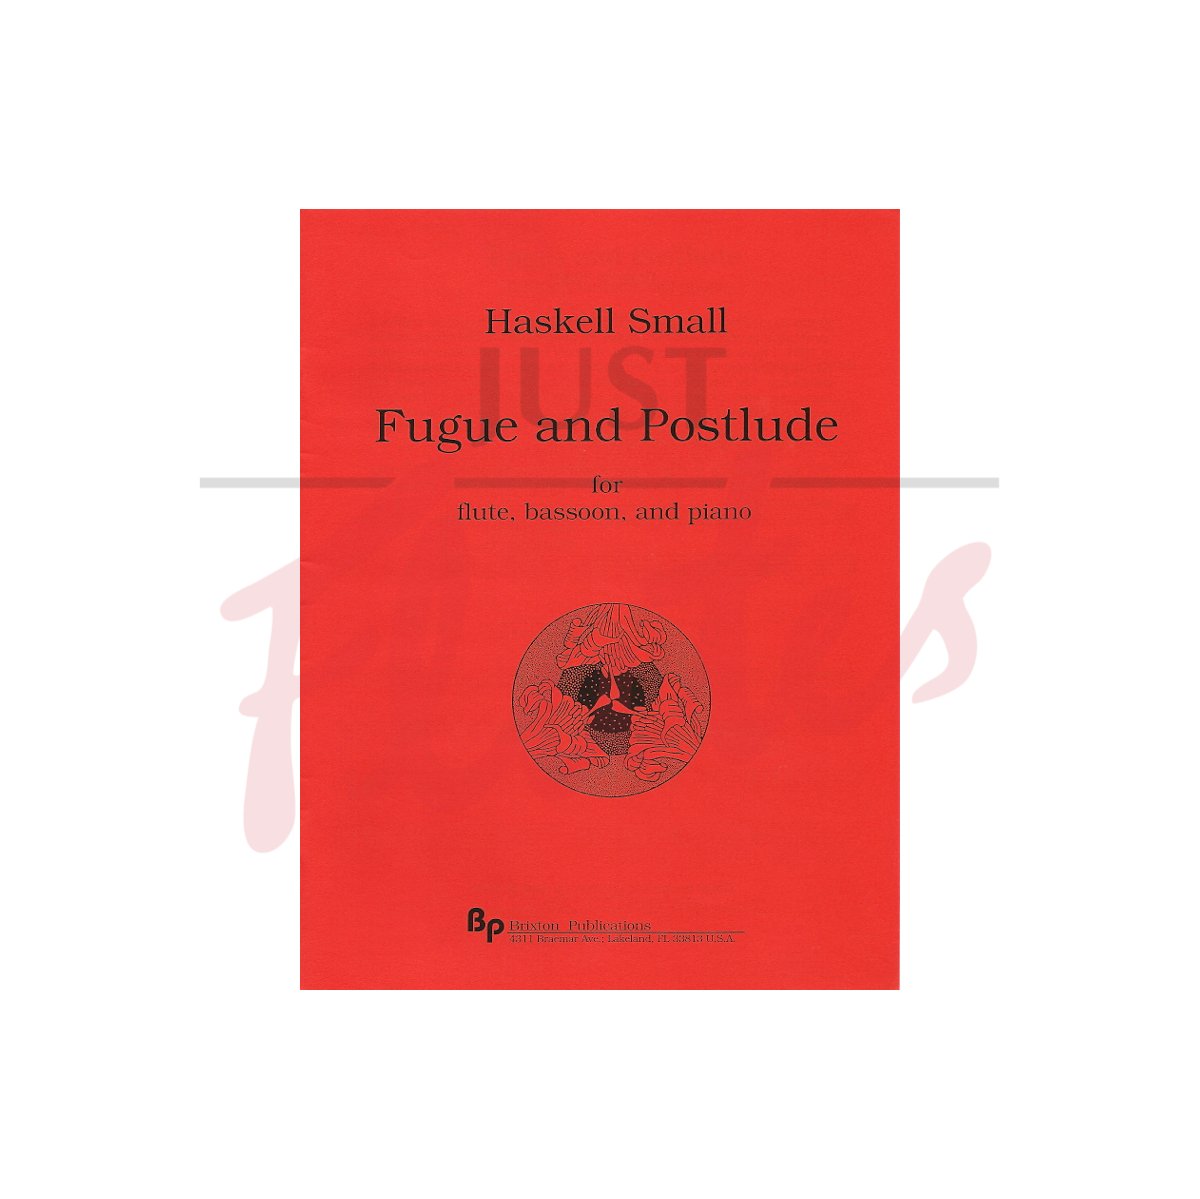 Fugue and Postlude